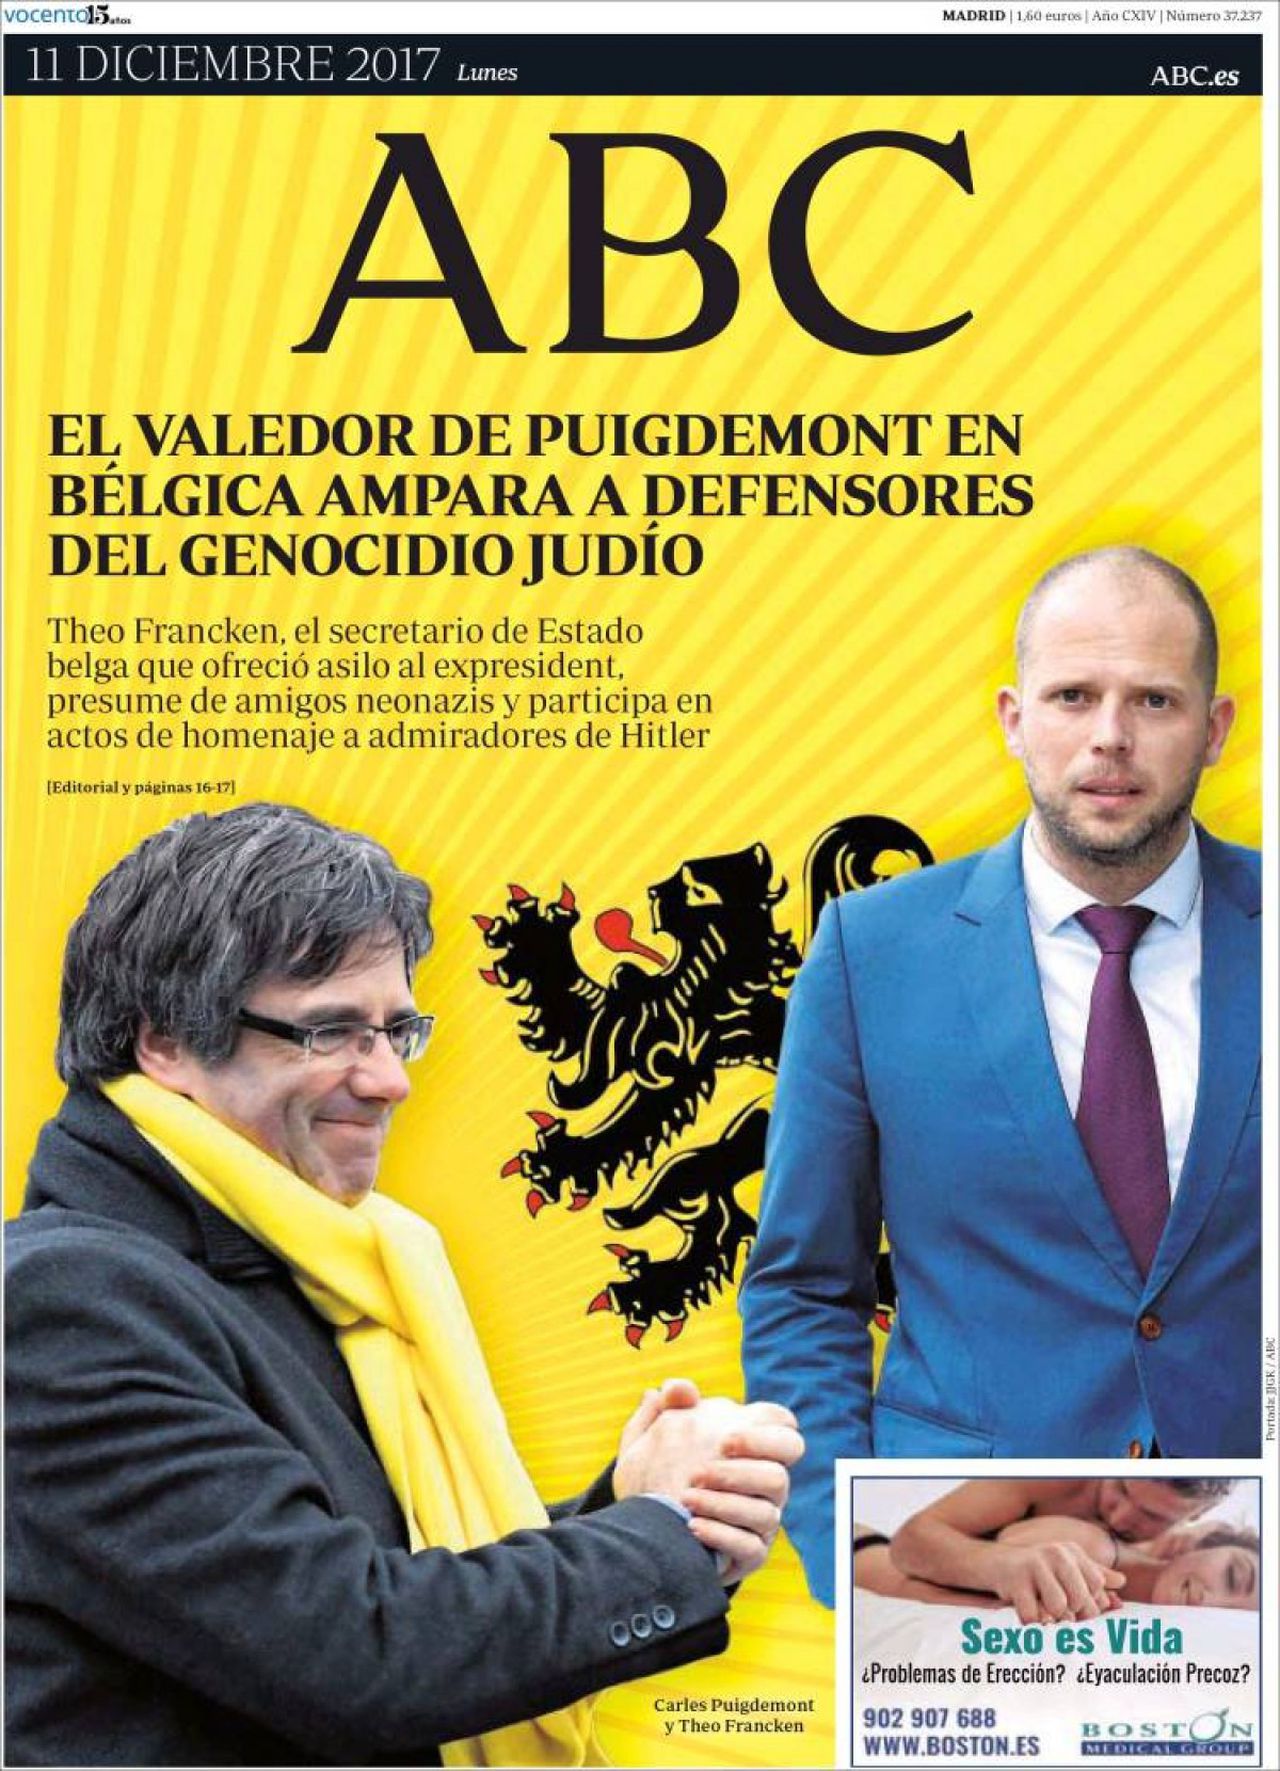 La TV flamenca denuncia l'onada anti-belga espanyola: "¡A por los belgas!"